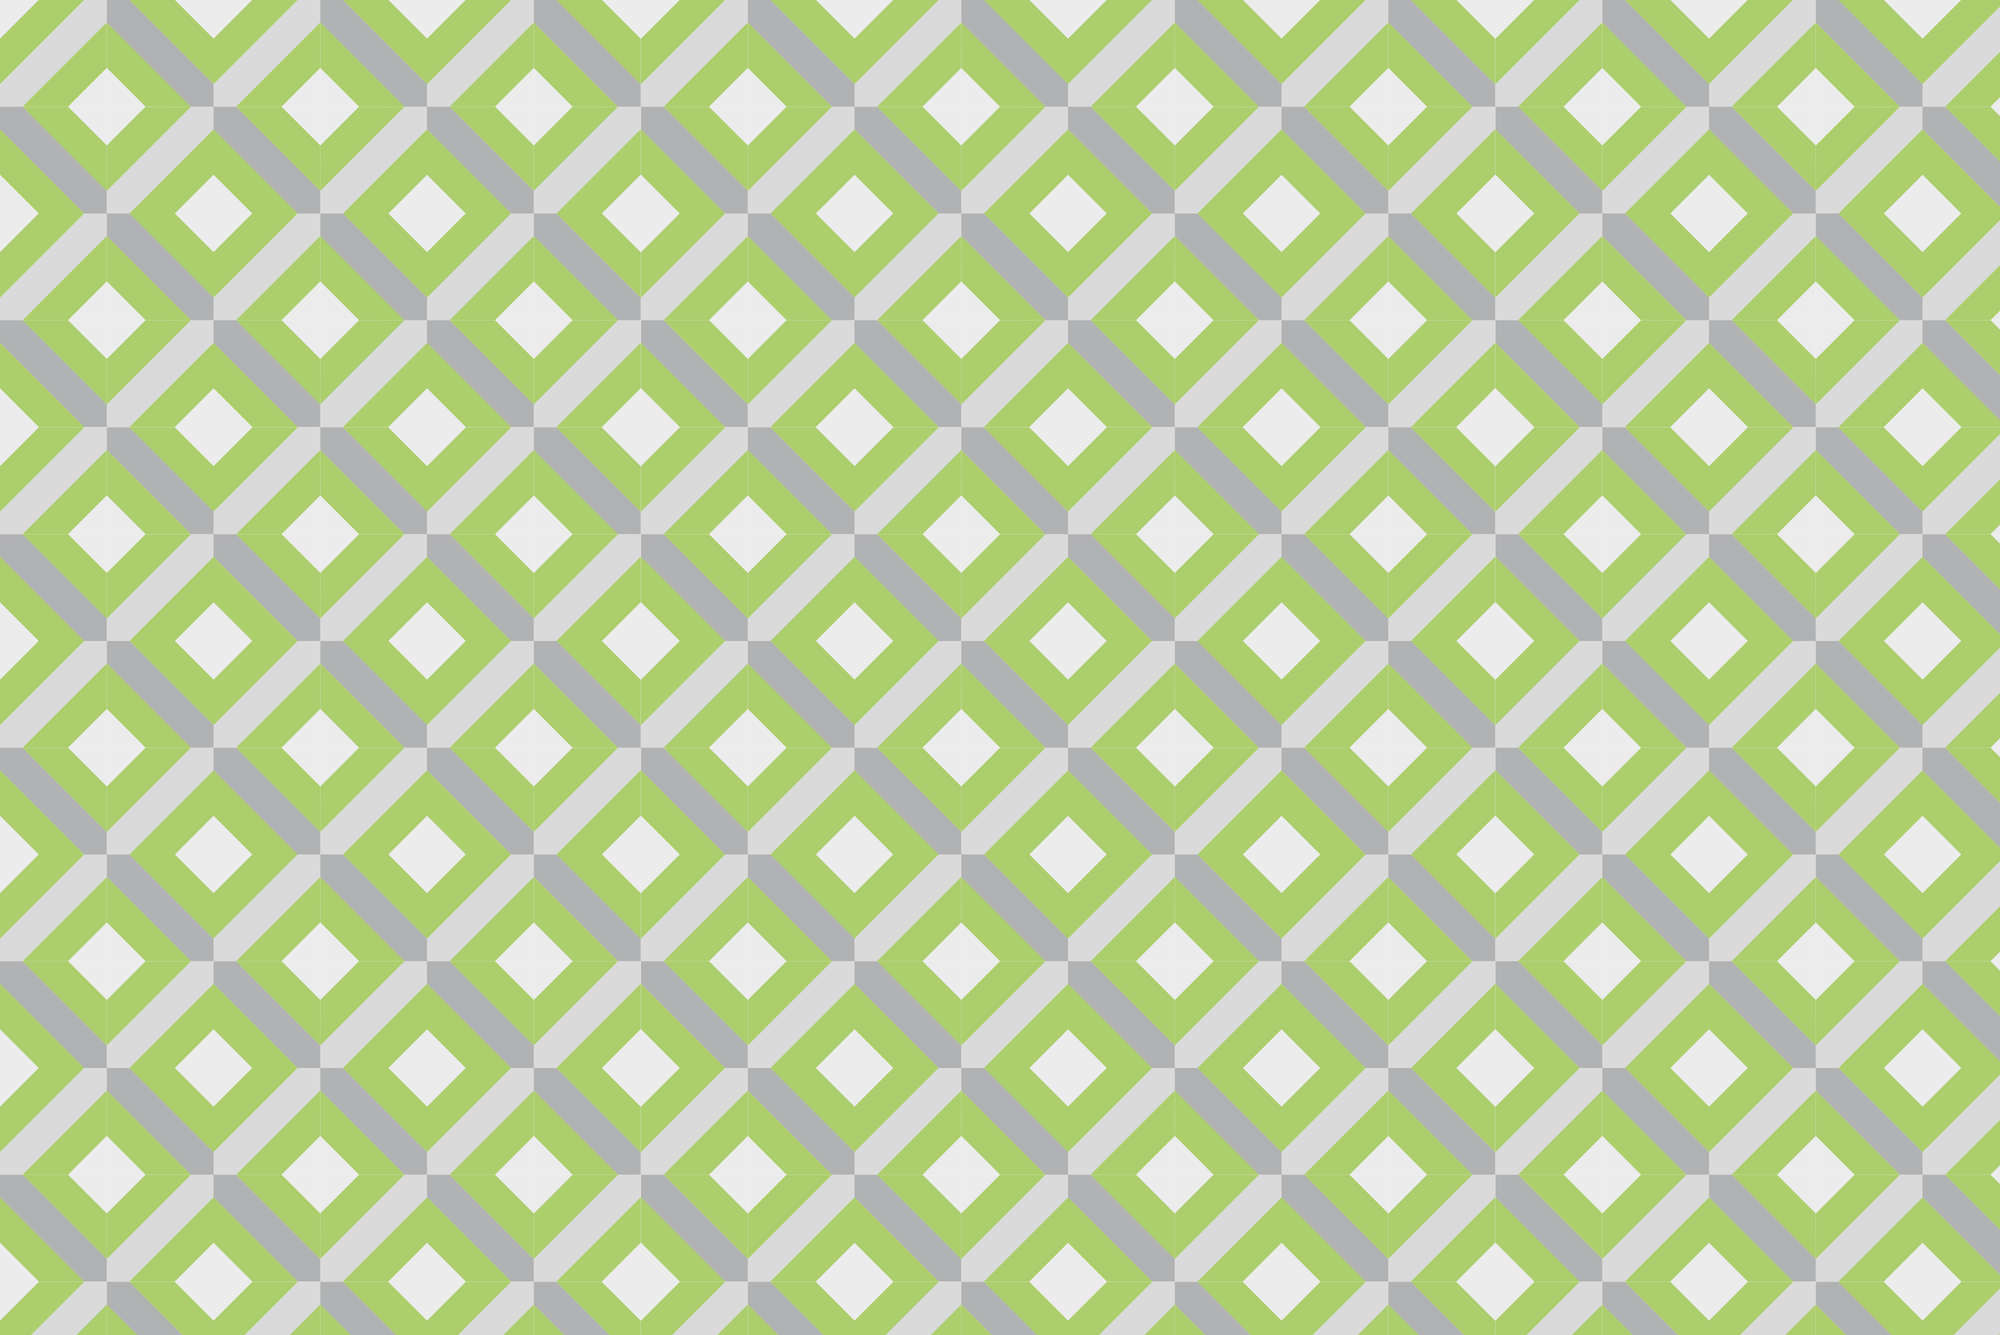             Papier peint design motif boîte avec petits carrés vert sur intissé nacré lisse
        